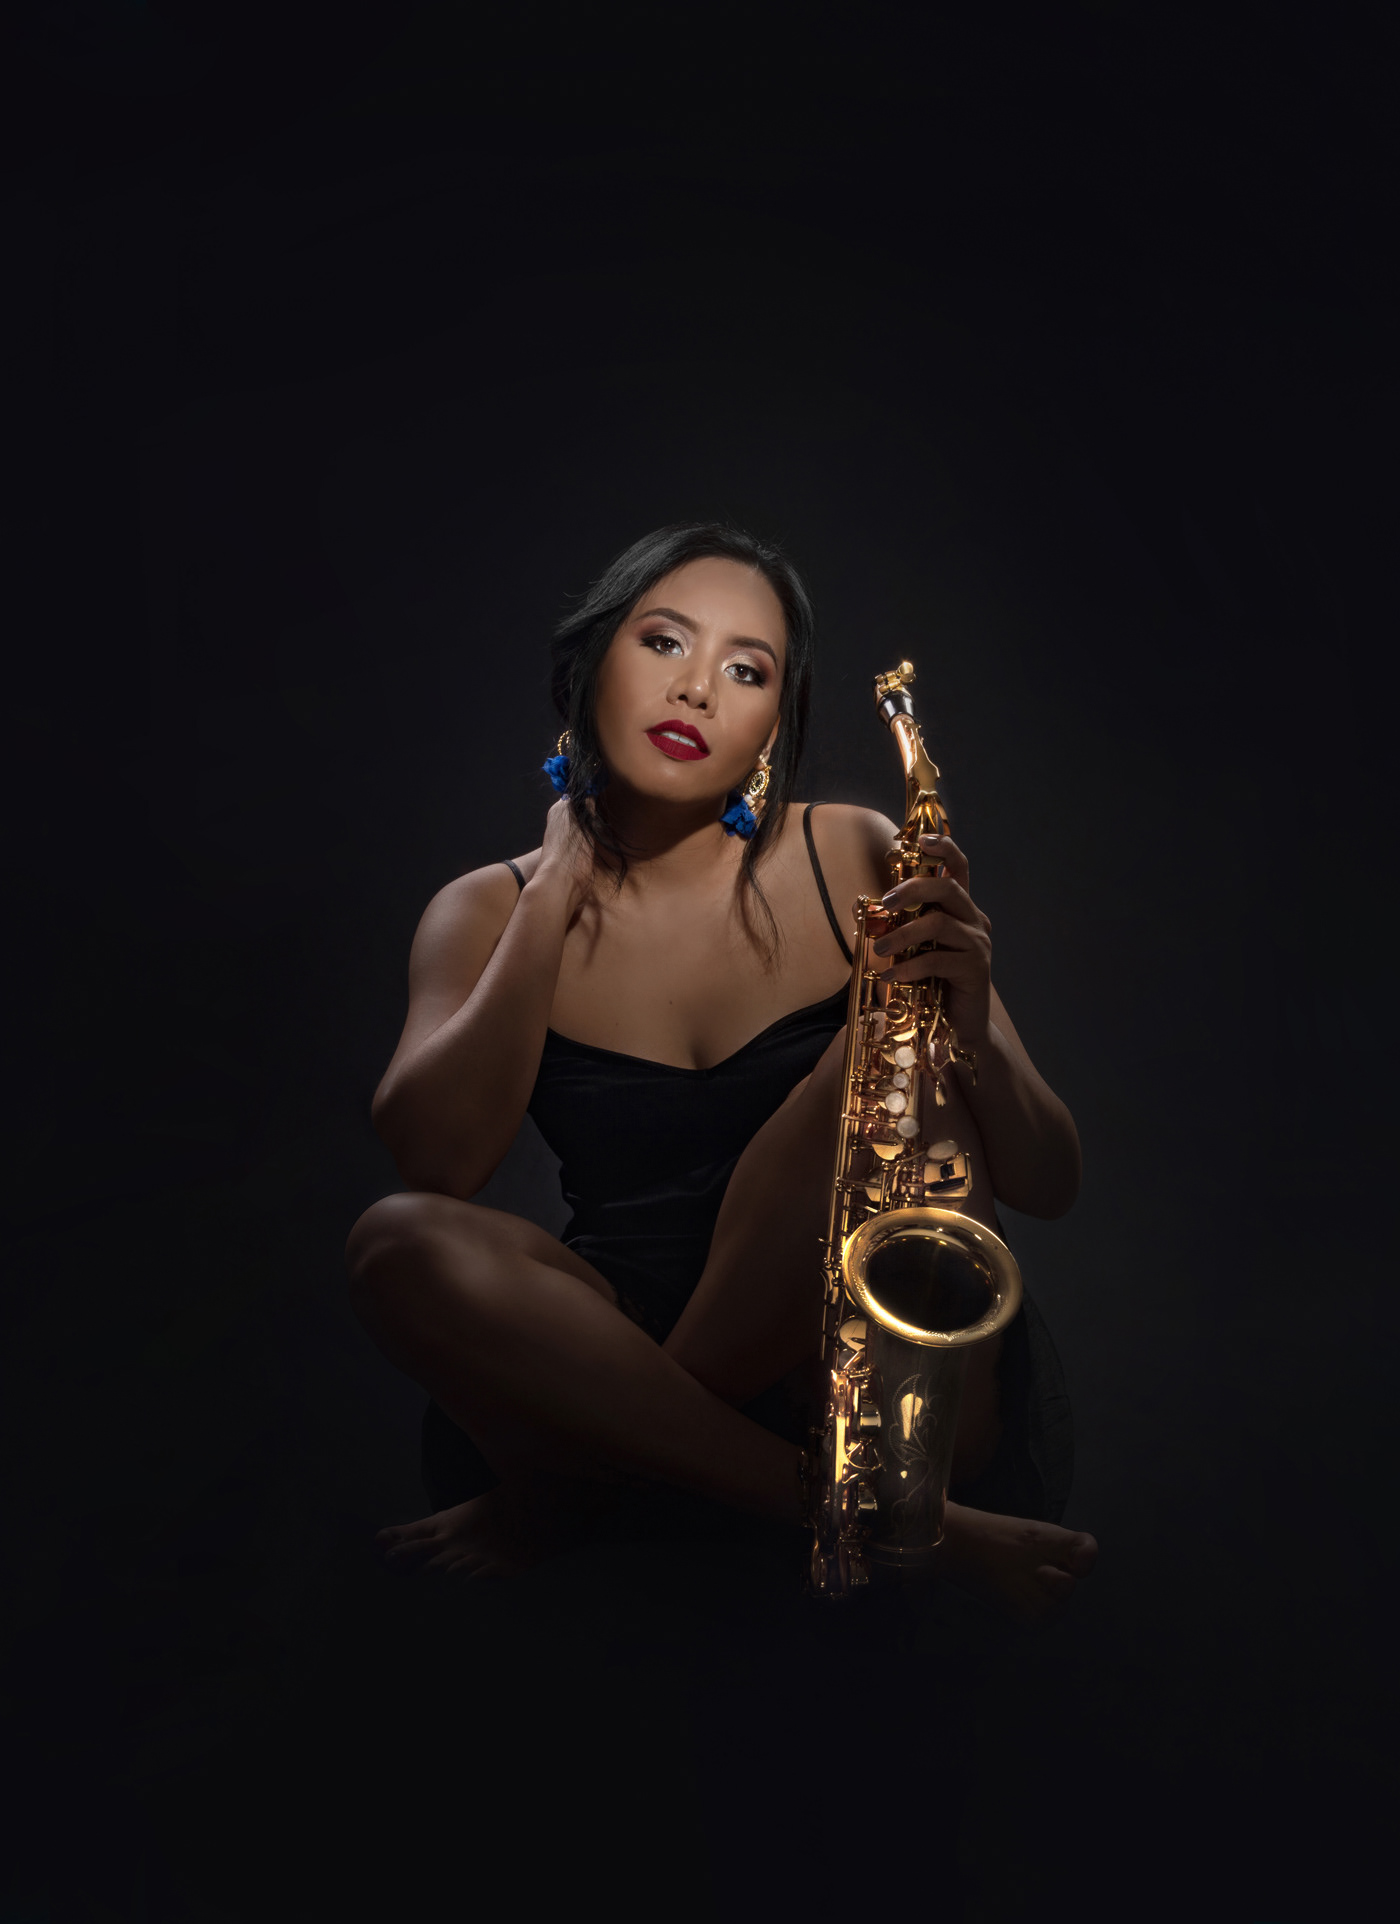 saxofon musica music Fotografia foto black elegant saxo Photography  photo